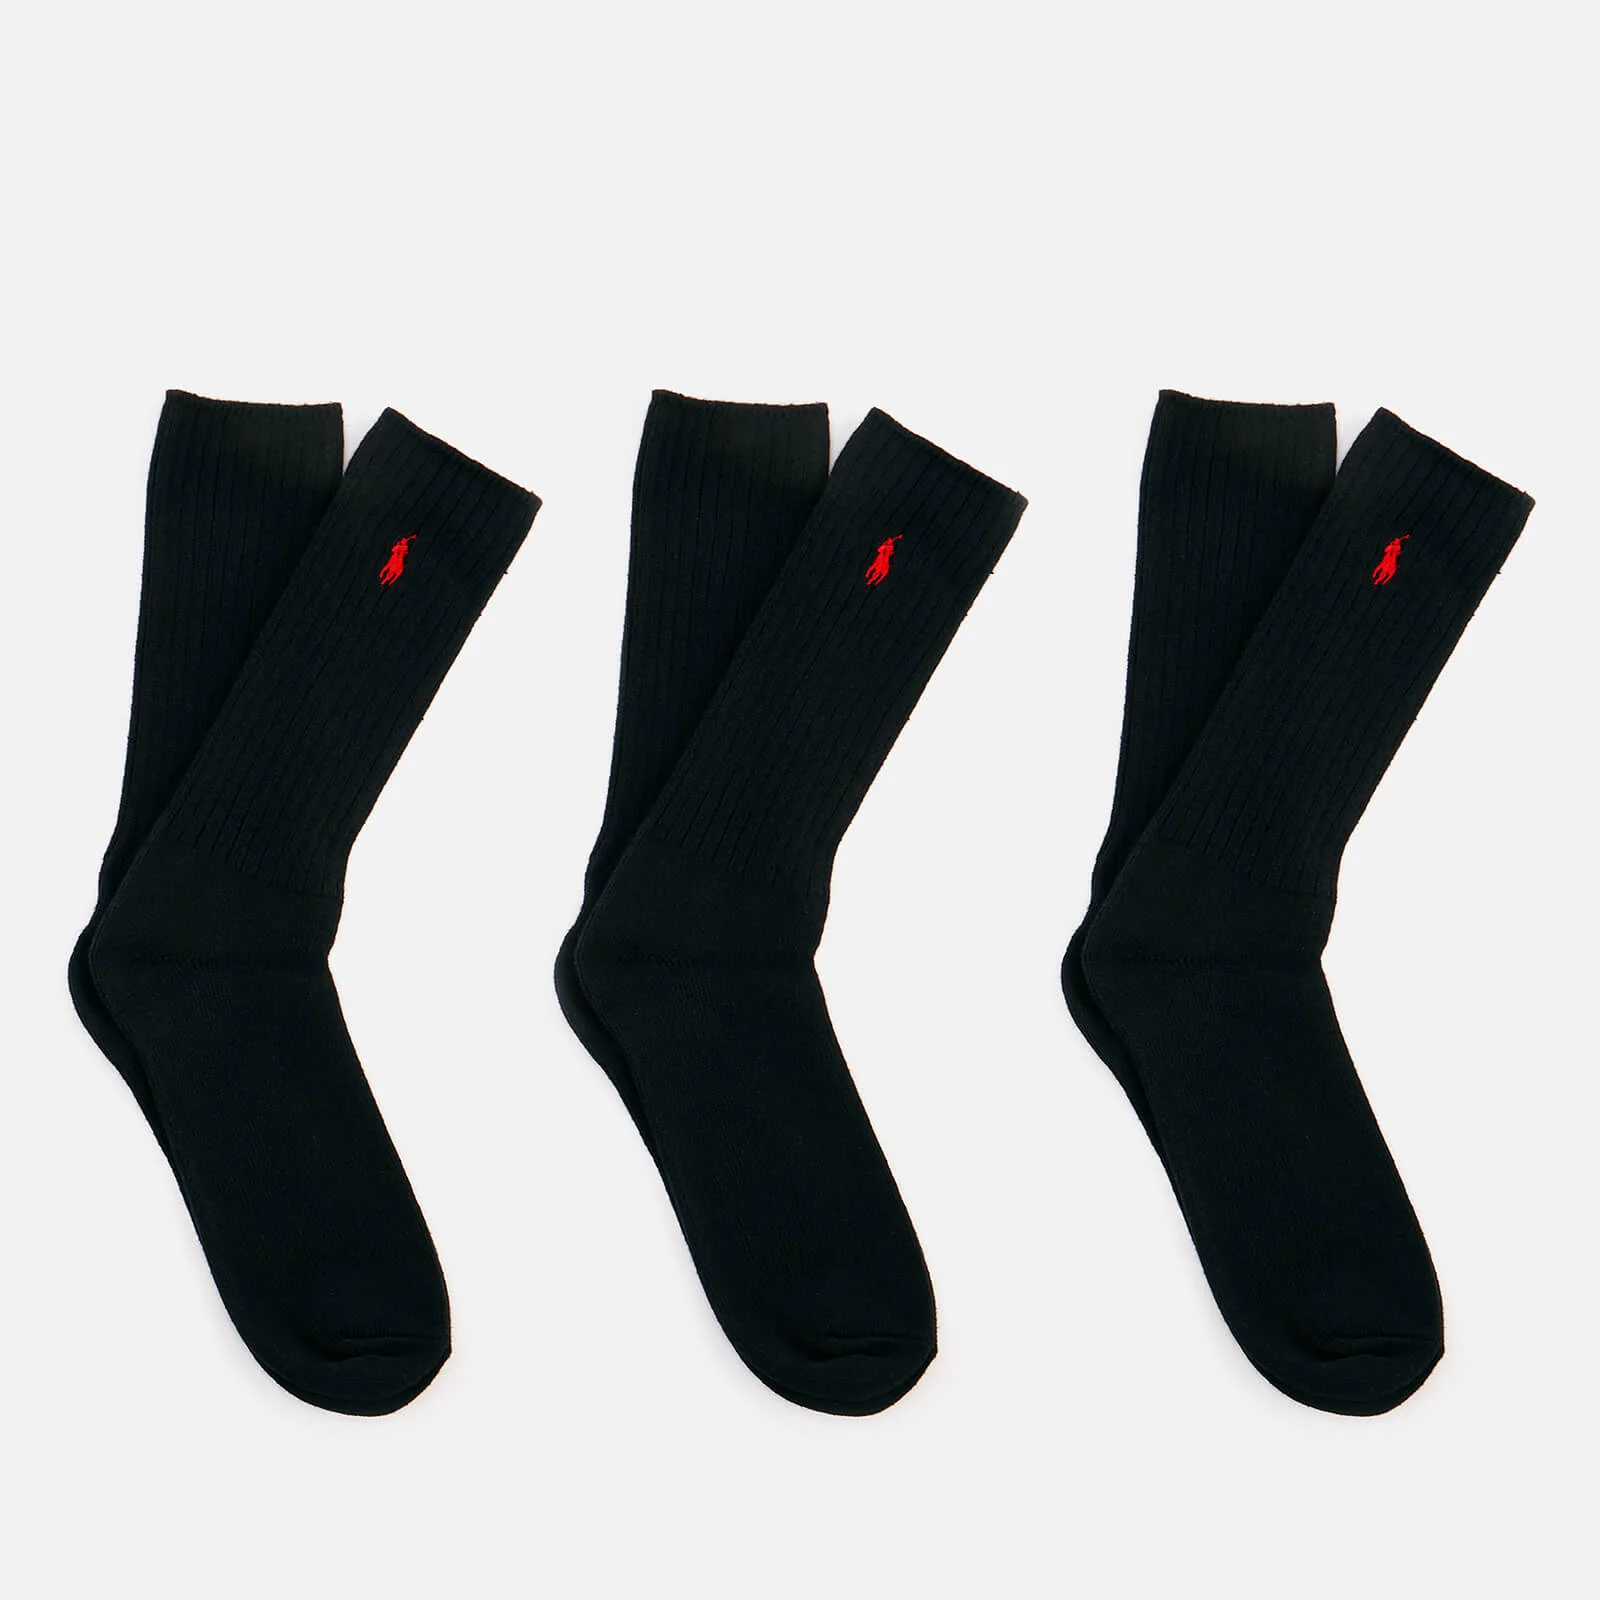 Polo Ralph Lauren Men's Classic 3 Pack Socks - Black Image 1